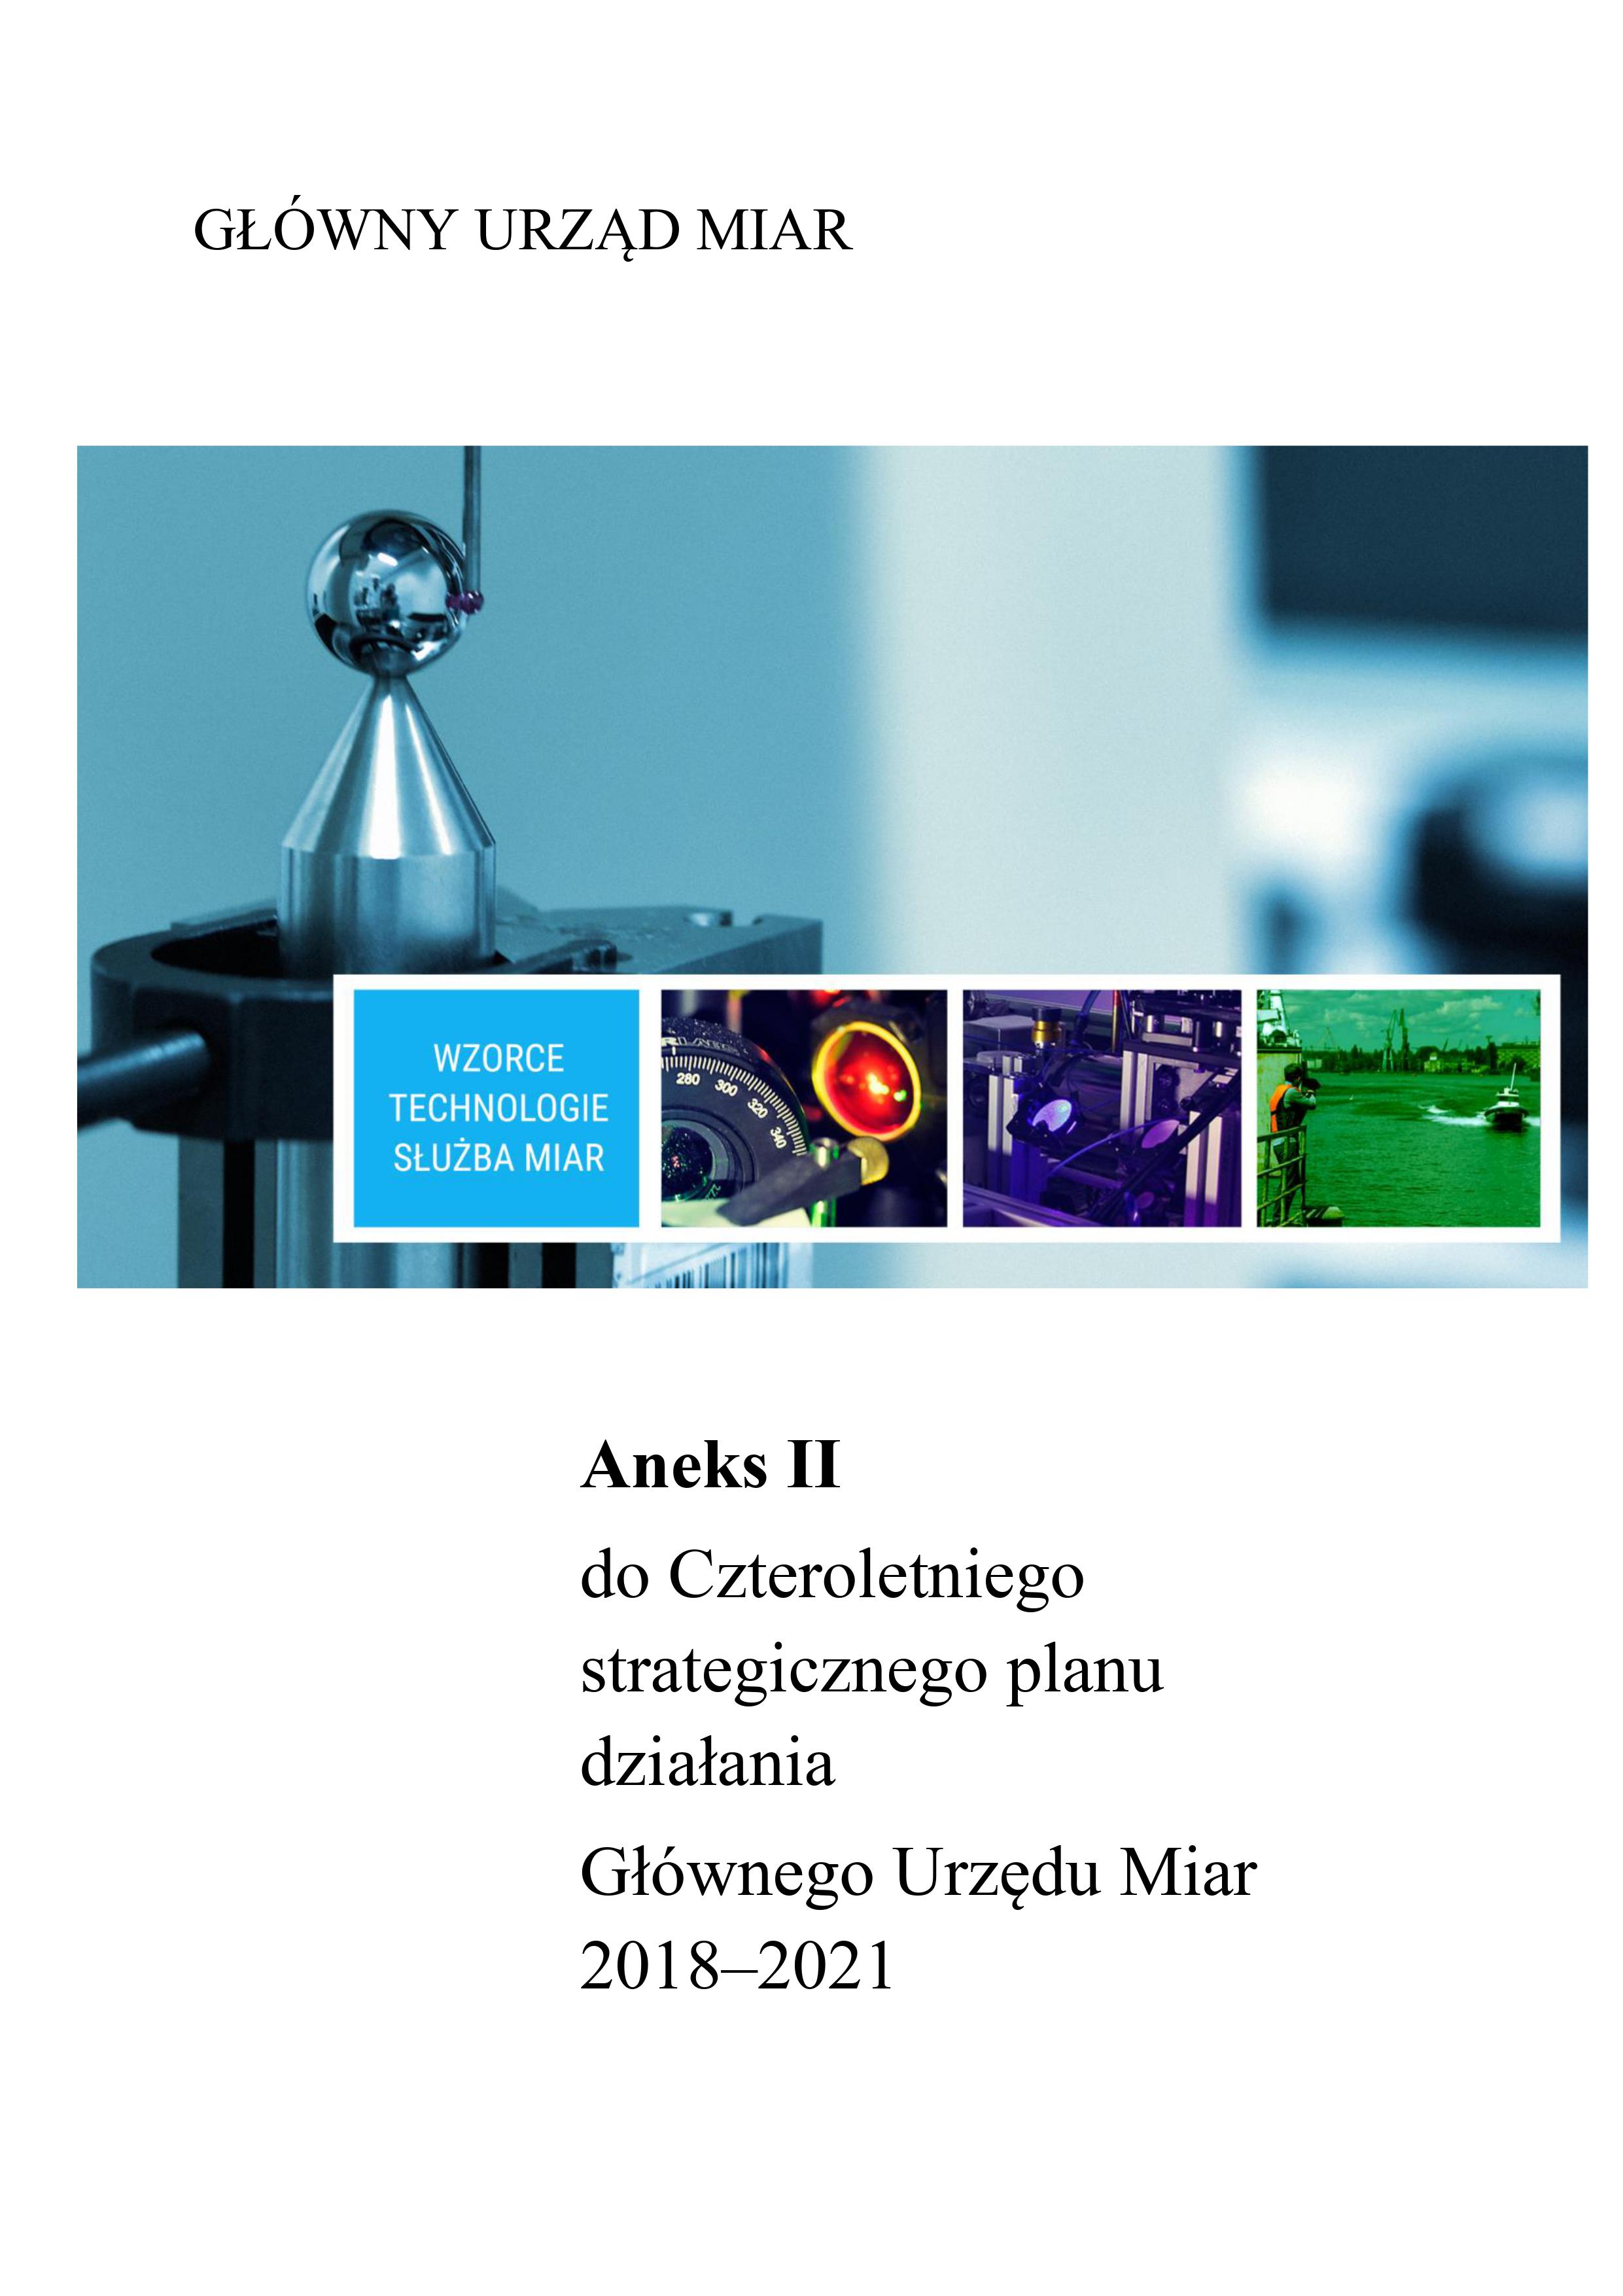 Okładka Aneksu II do czteroletniego strategicznego planu działania GUM 2018-21. Po środku pasek zdjęć, u góry nazwa Główny Urząd Miar. Pod zdjęciami tytuł publikacji.